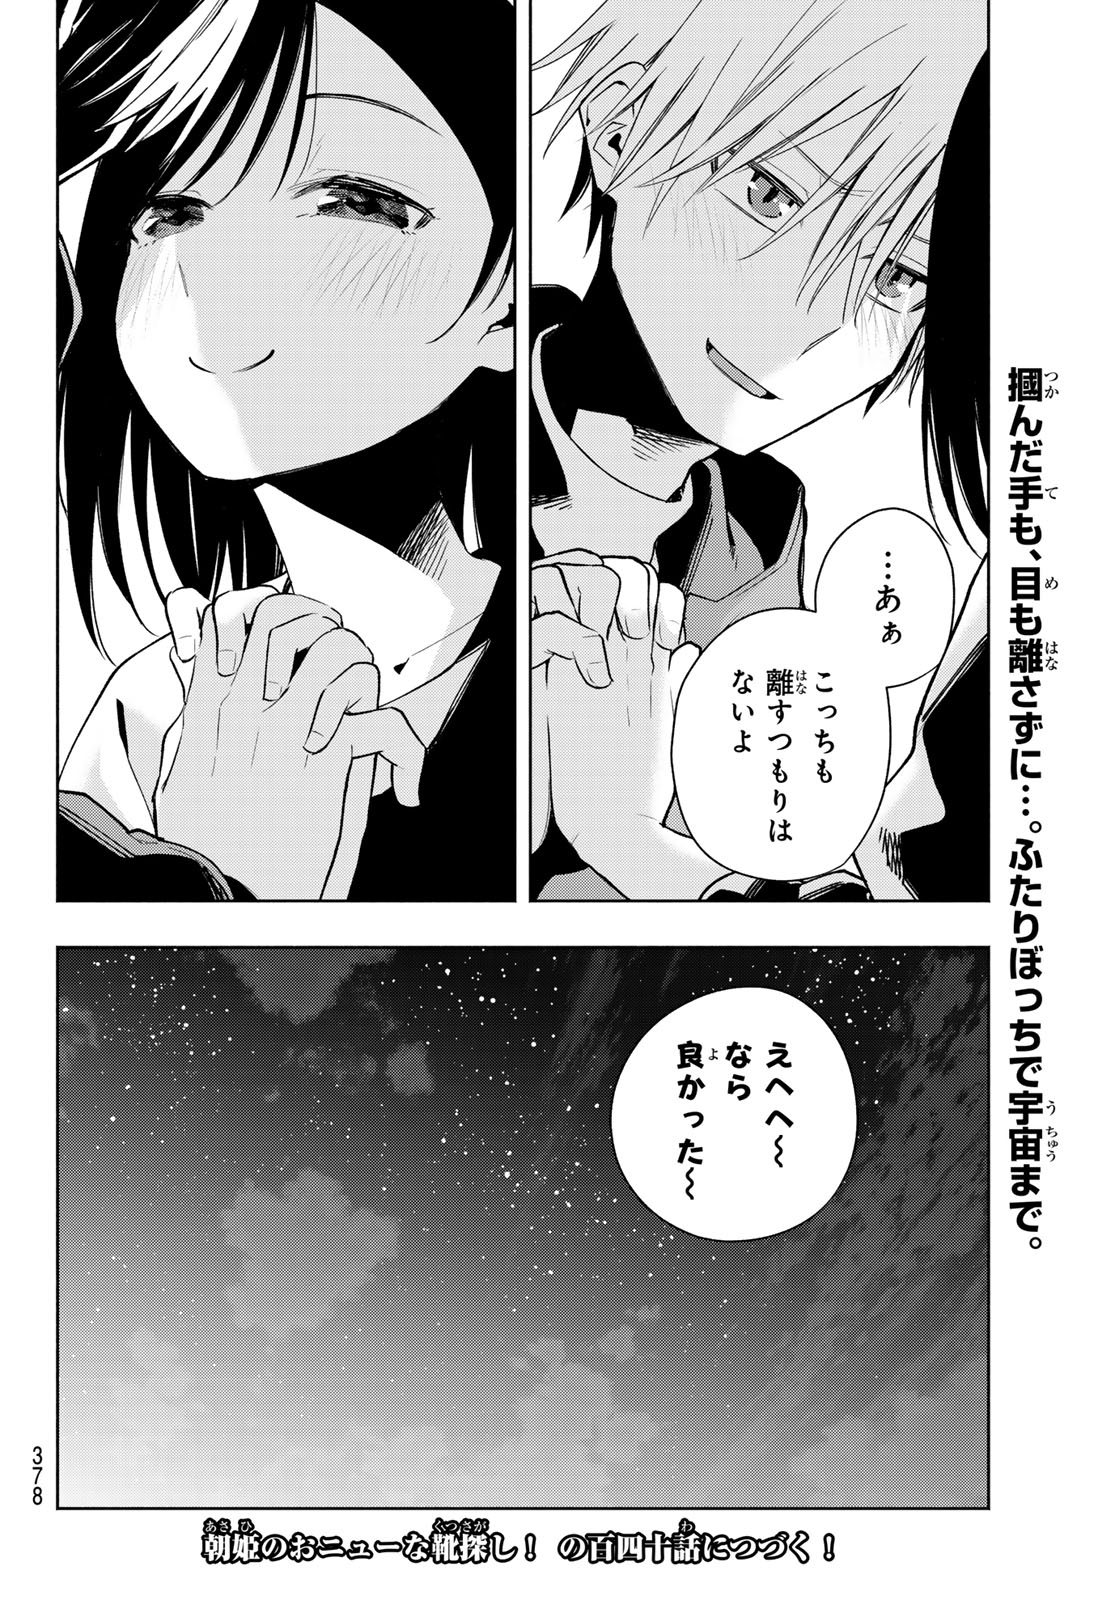 Amagami-san Chi no Enmusubi - Chapter 139 - Page 20